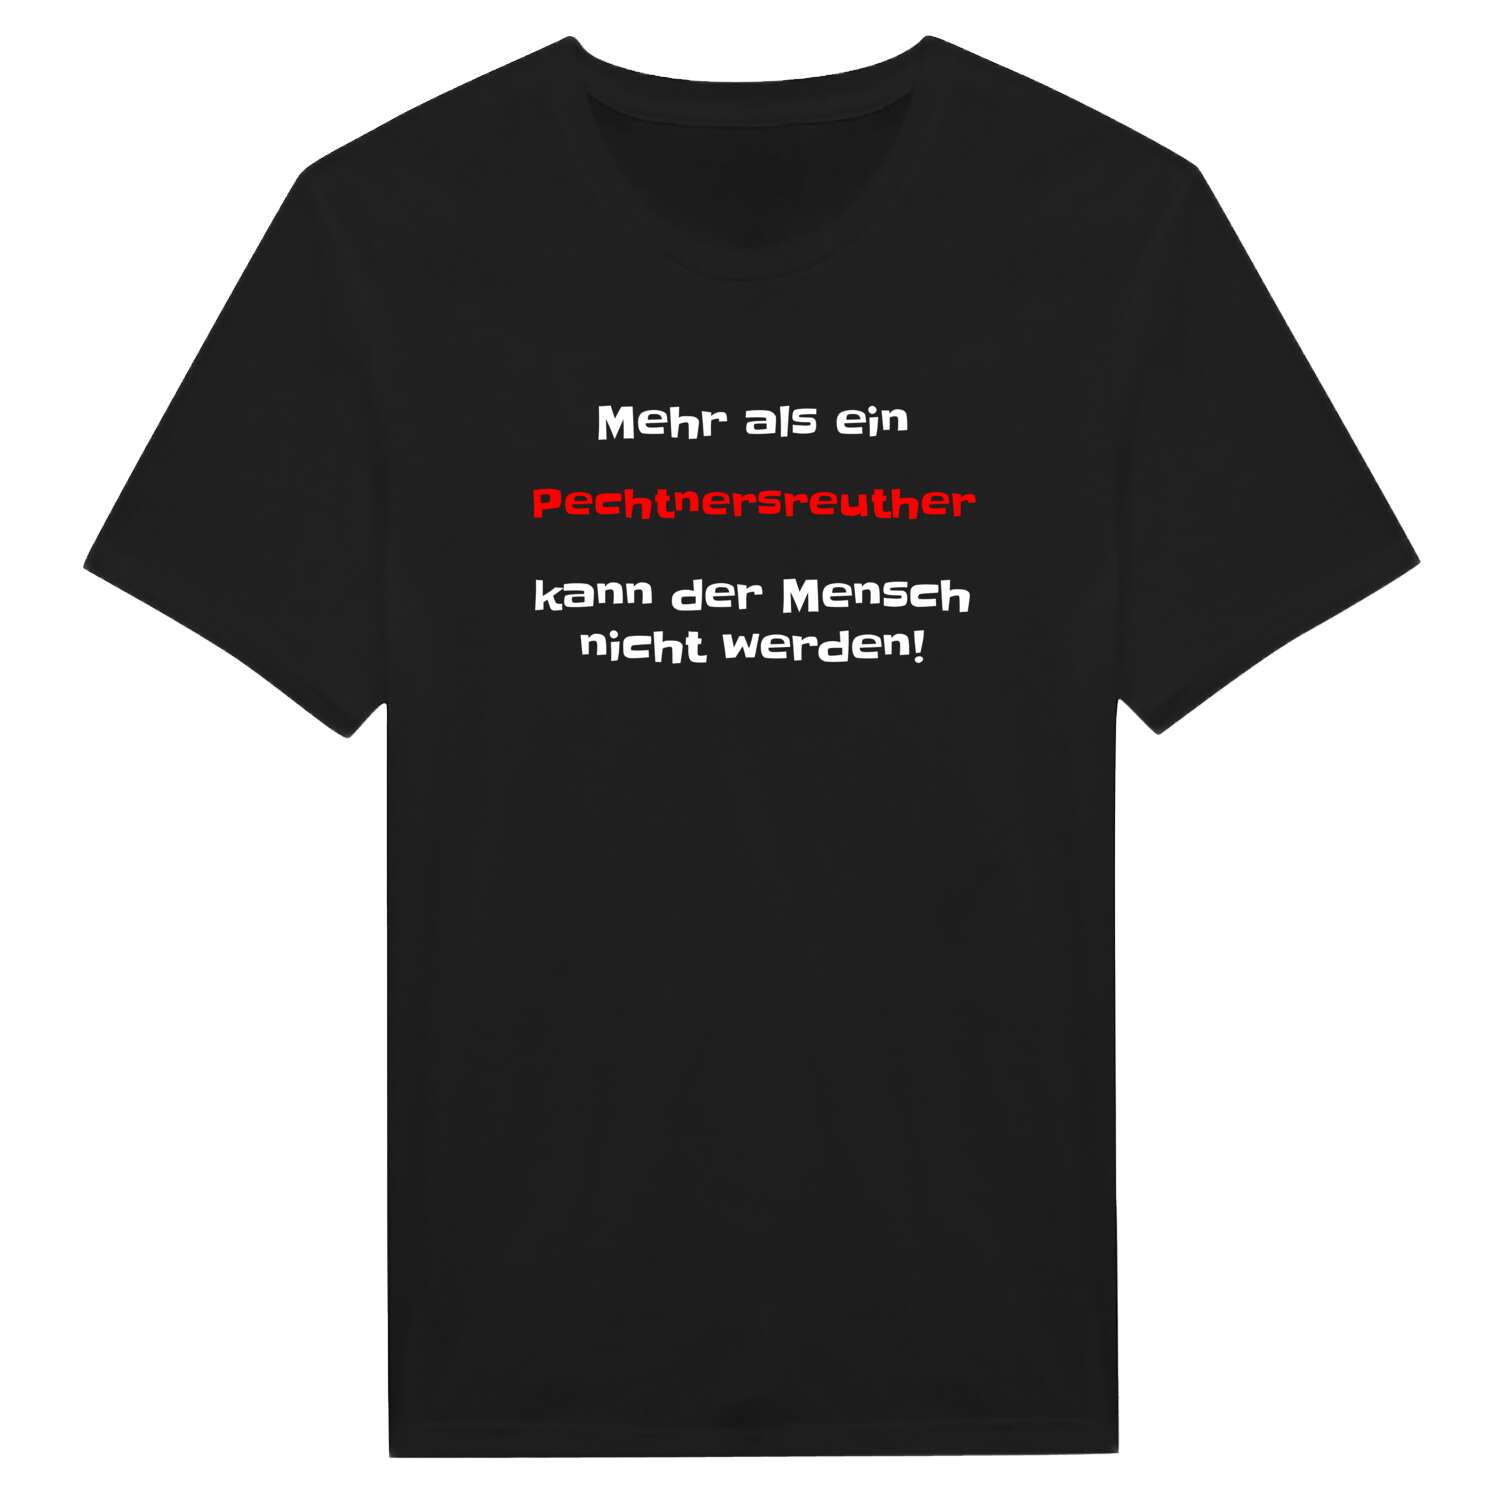 Pechtnersreuth T-Shirt »Mehr als ein«